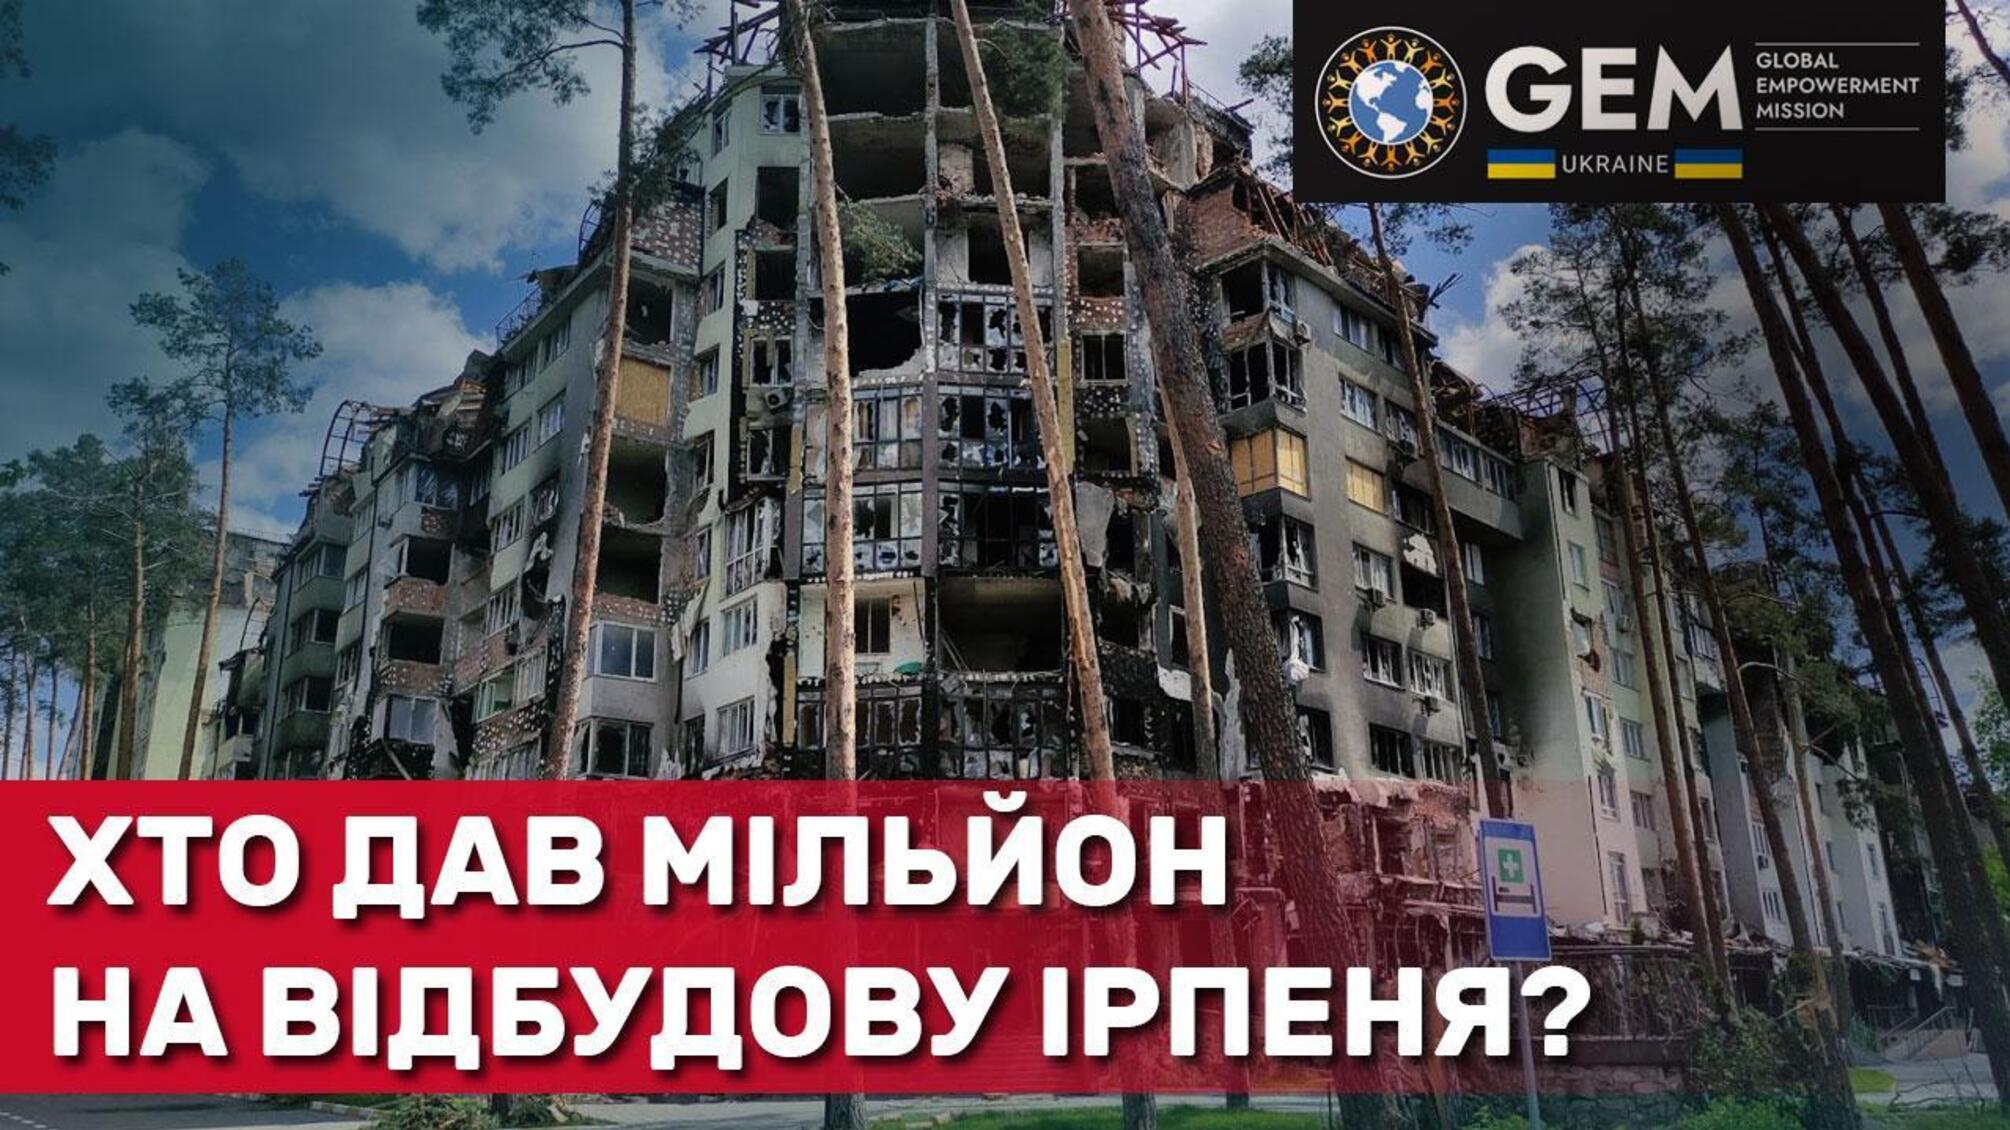 Фонд GEM и Киевская военная администрация восстановят поврежденные войной окна в домах жителей Ирпеня и других городков региона